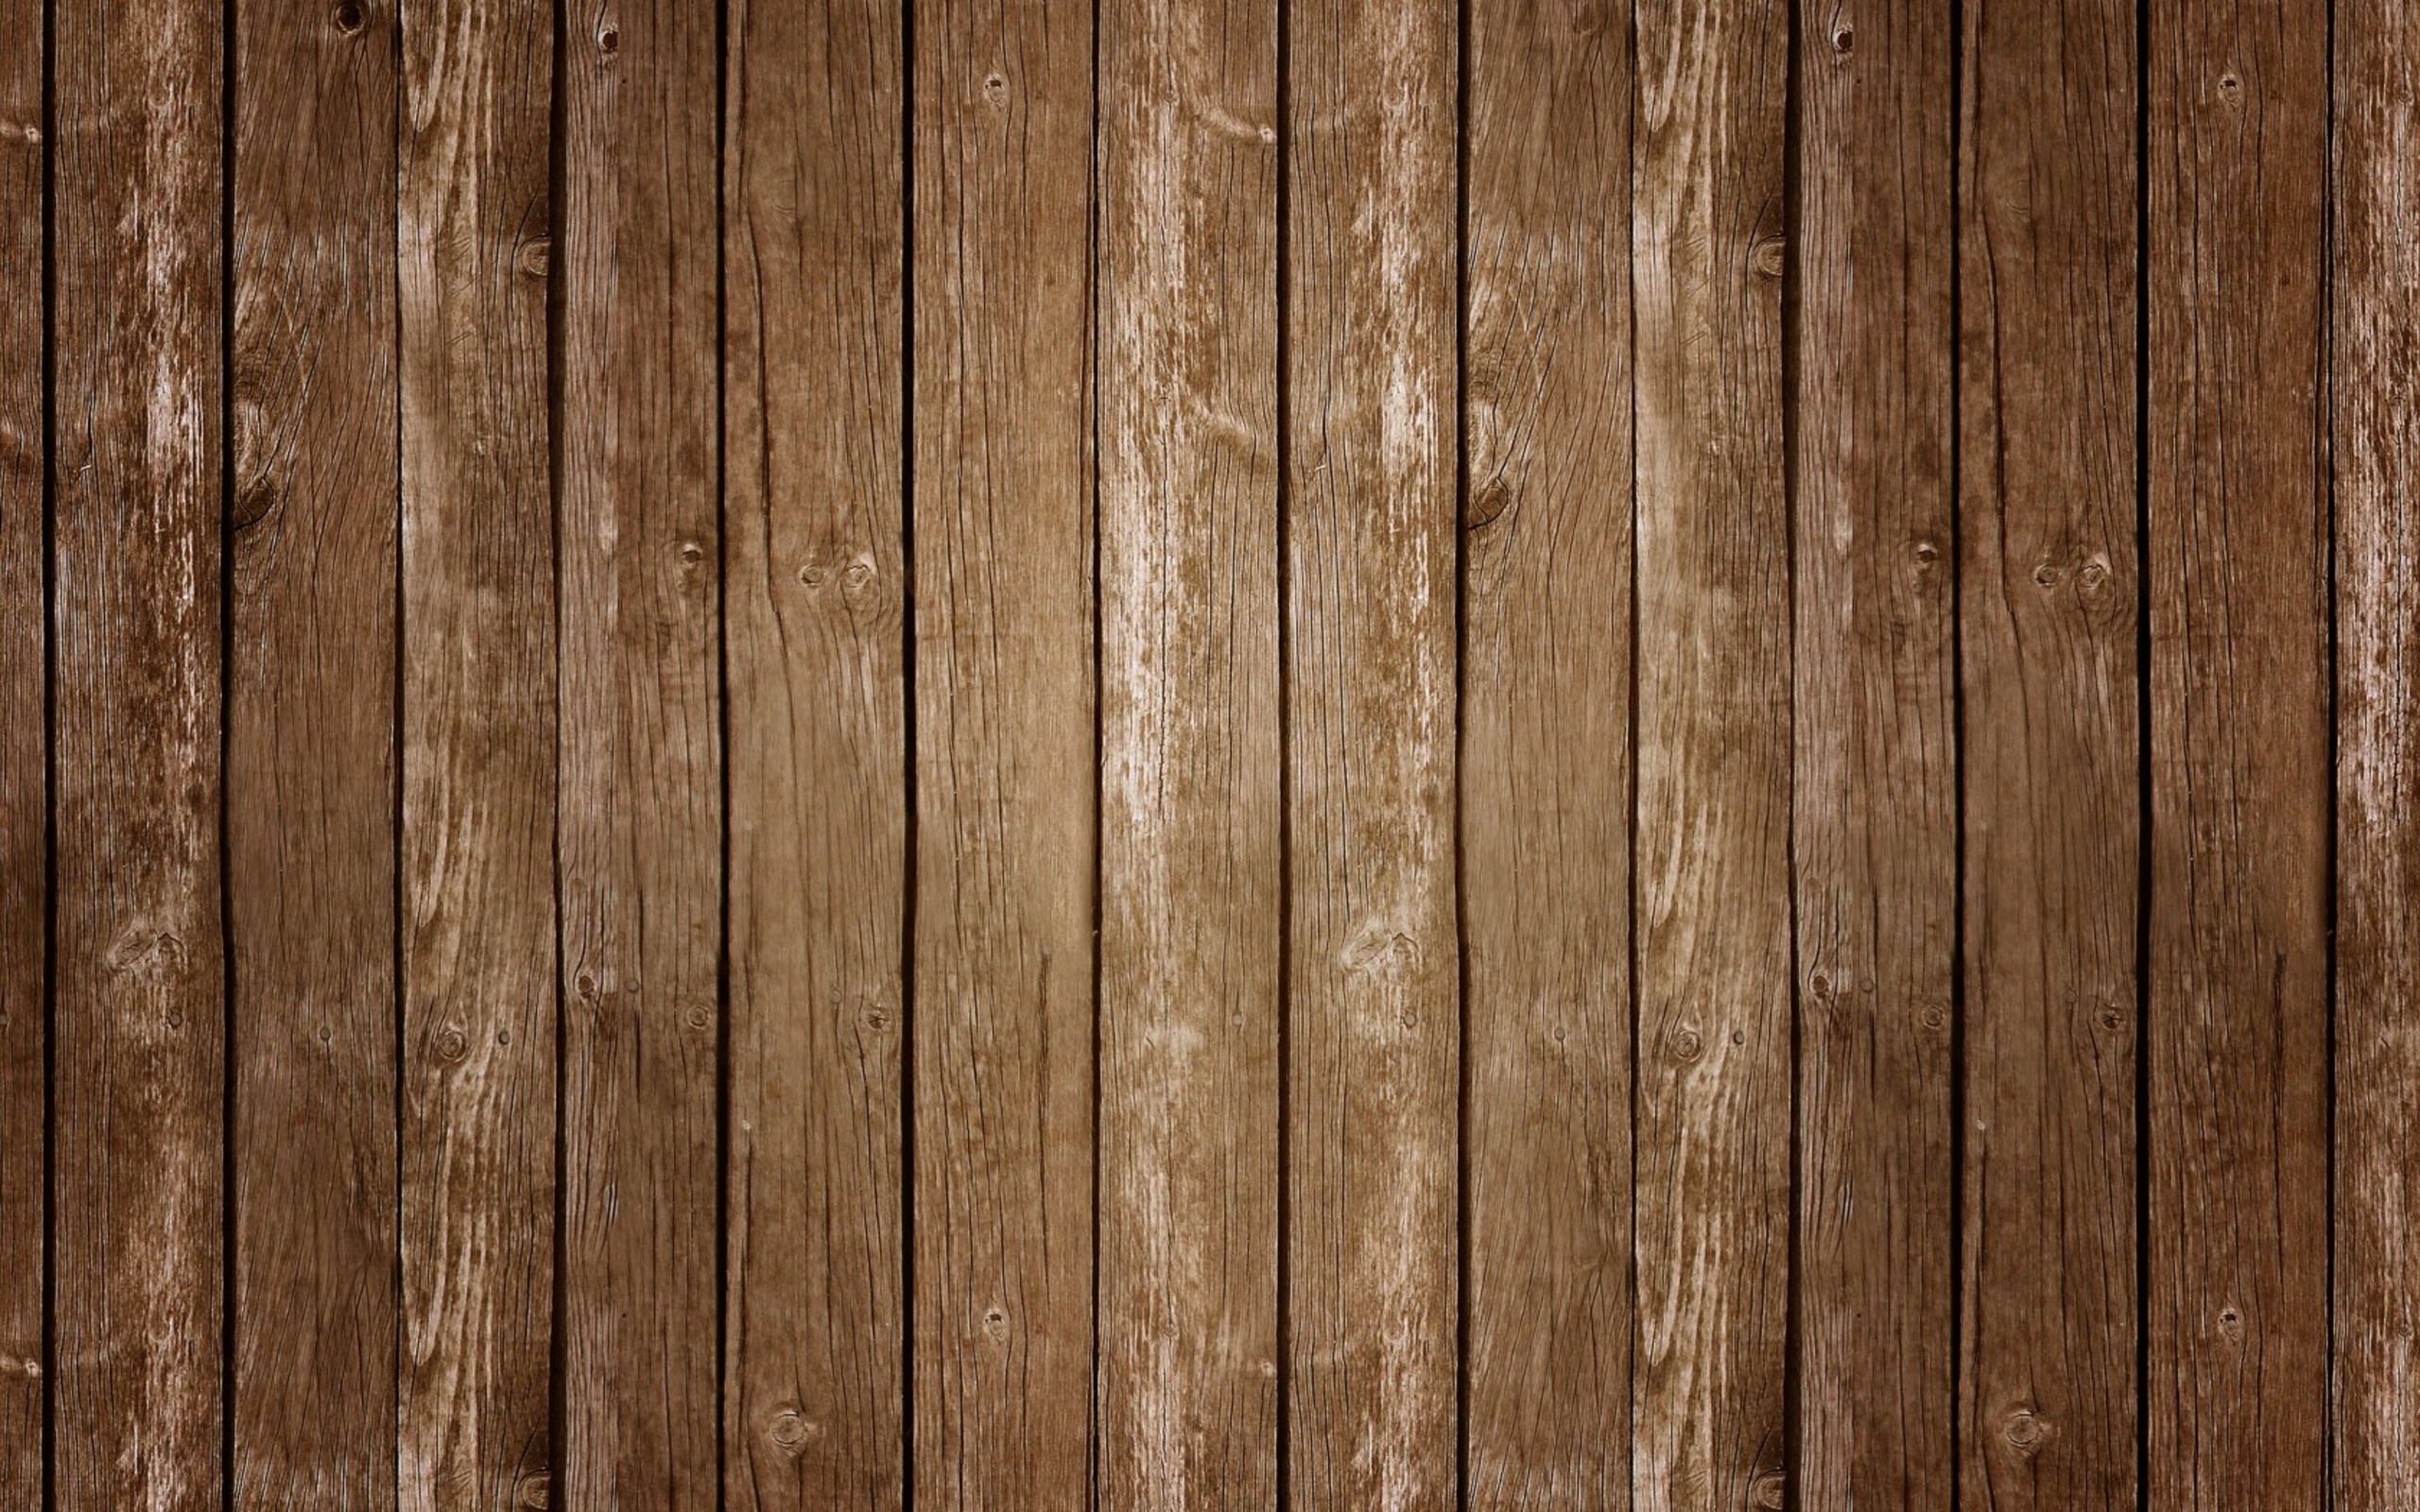 Barn Wood Texture